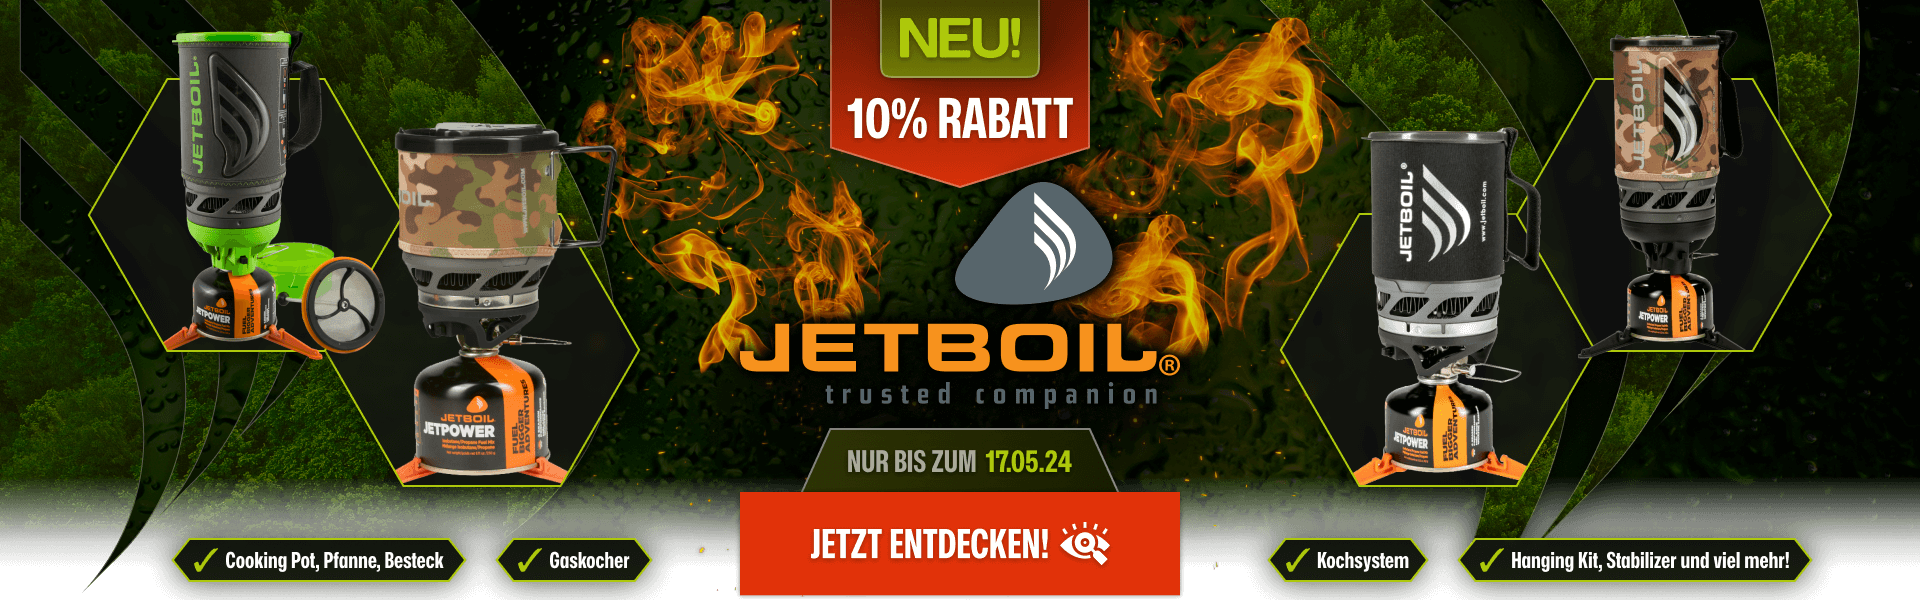 NEU im bw-online-shop: Jetboil - 10% Rabatt auf alle Jetboil Artikel